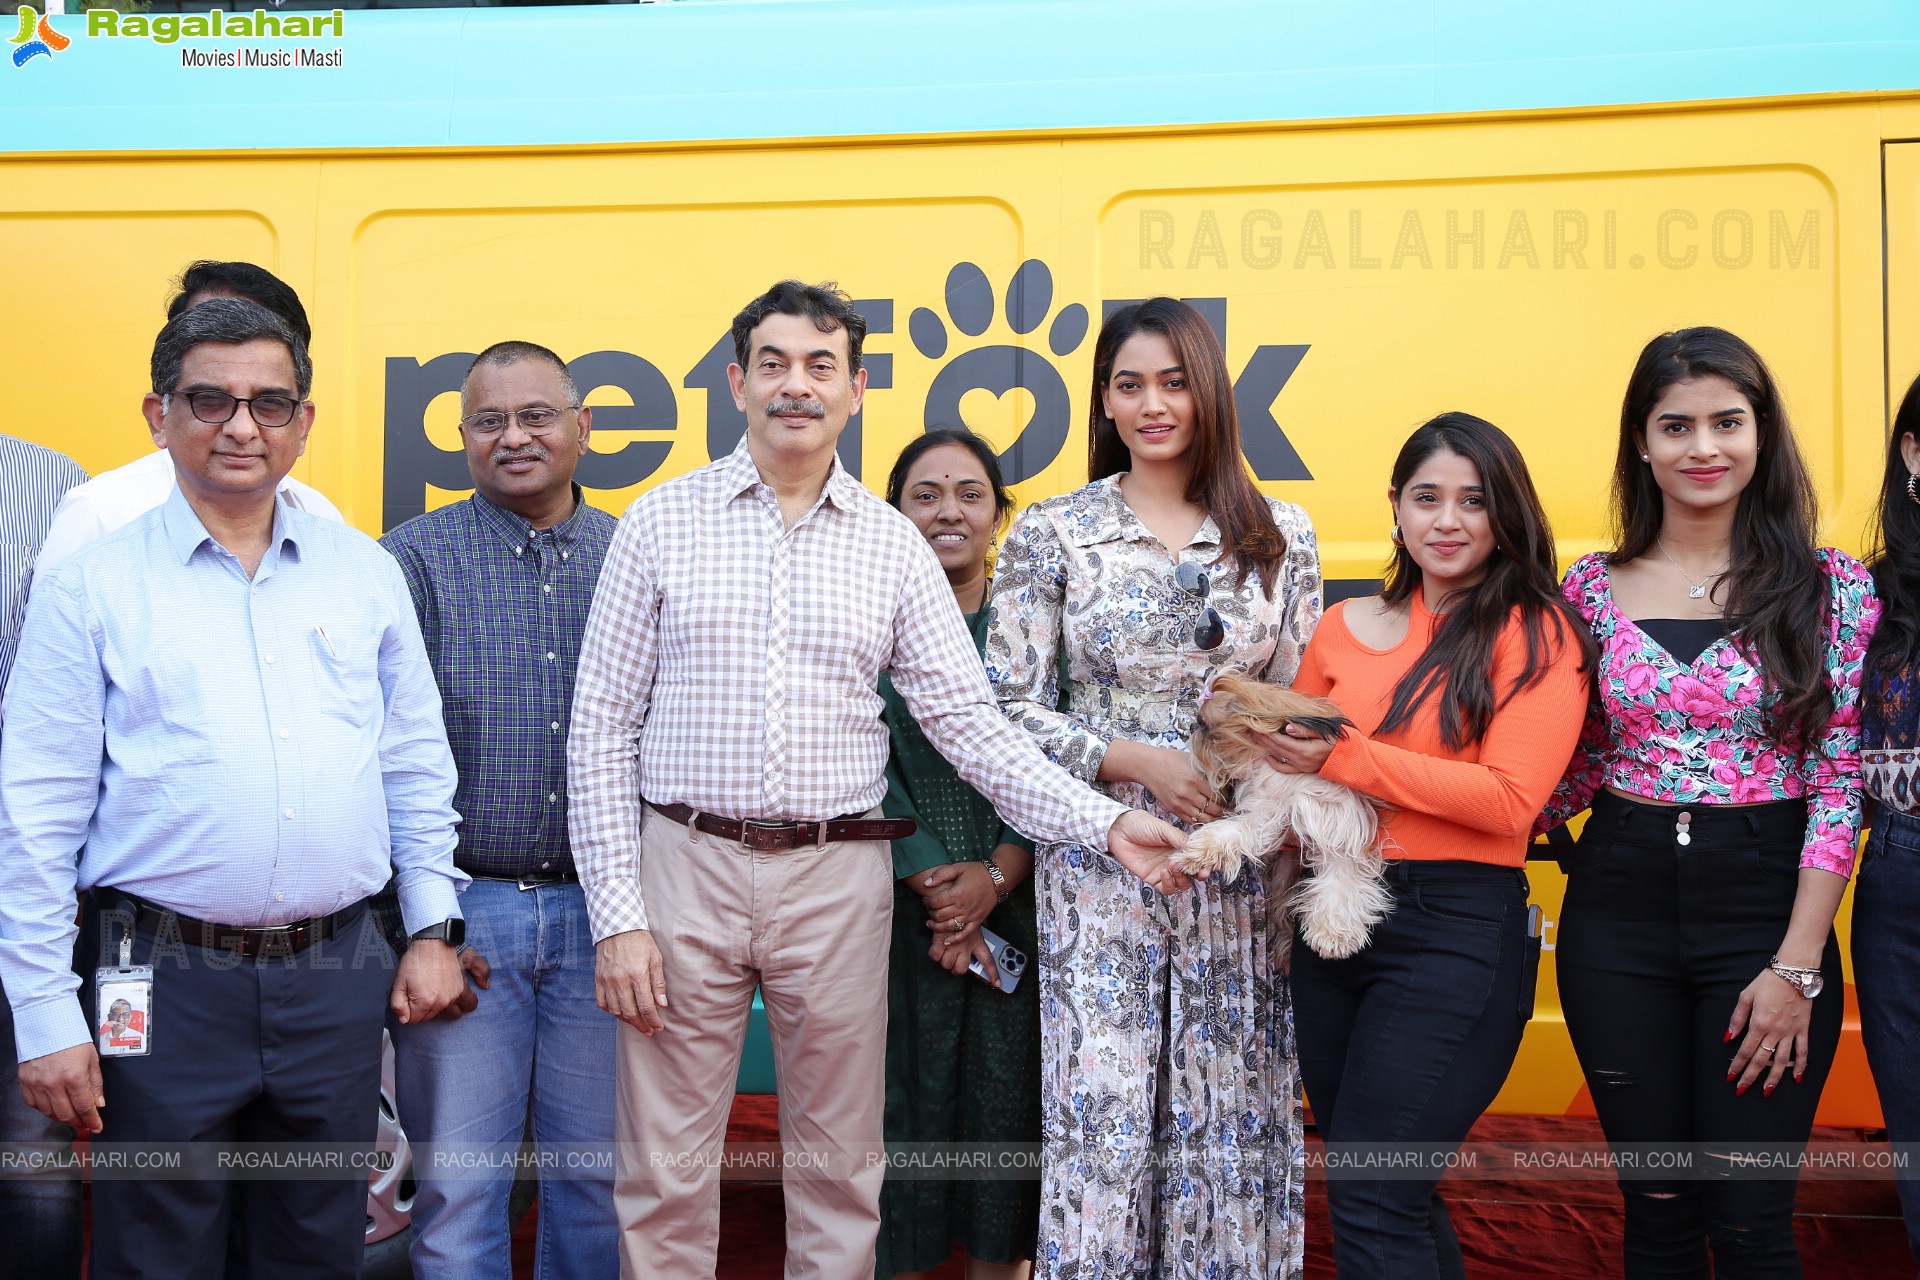 Petfolk's Pet Grooming Vans Launch T-Hub 2.0, Hyderabad